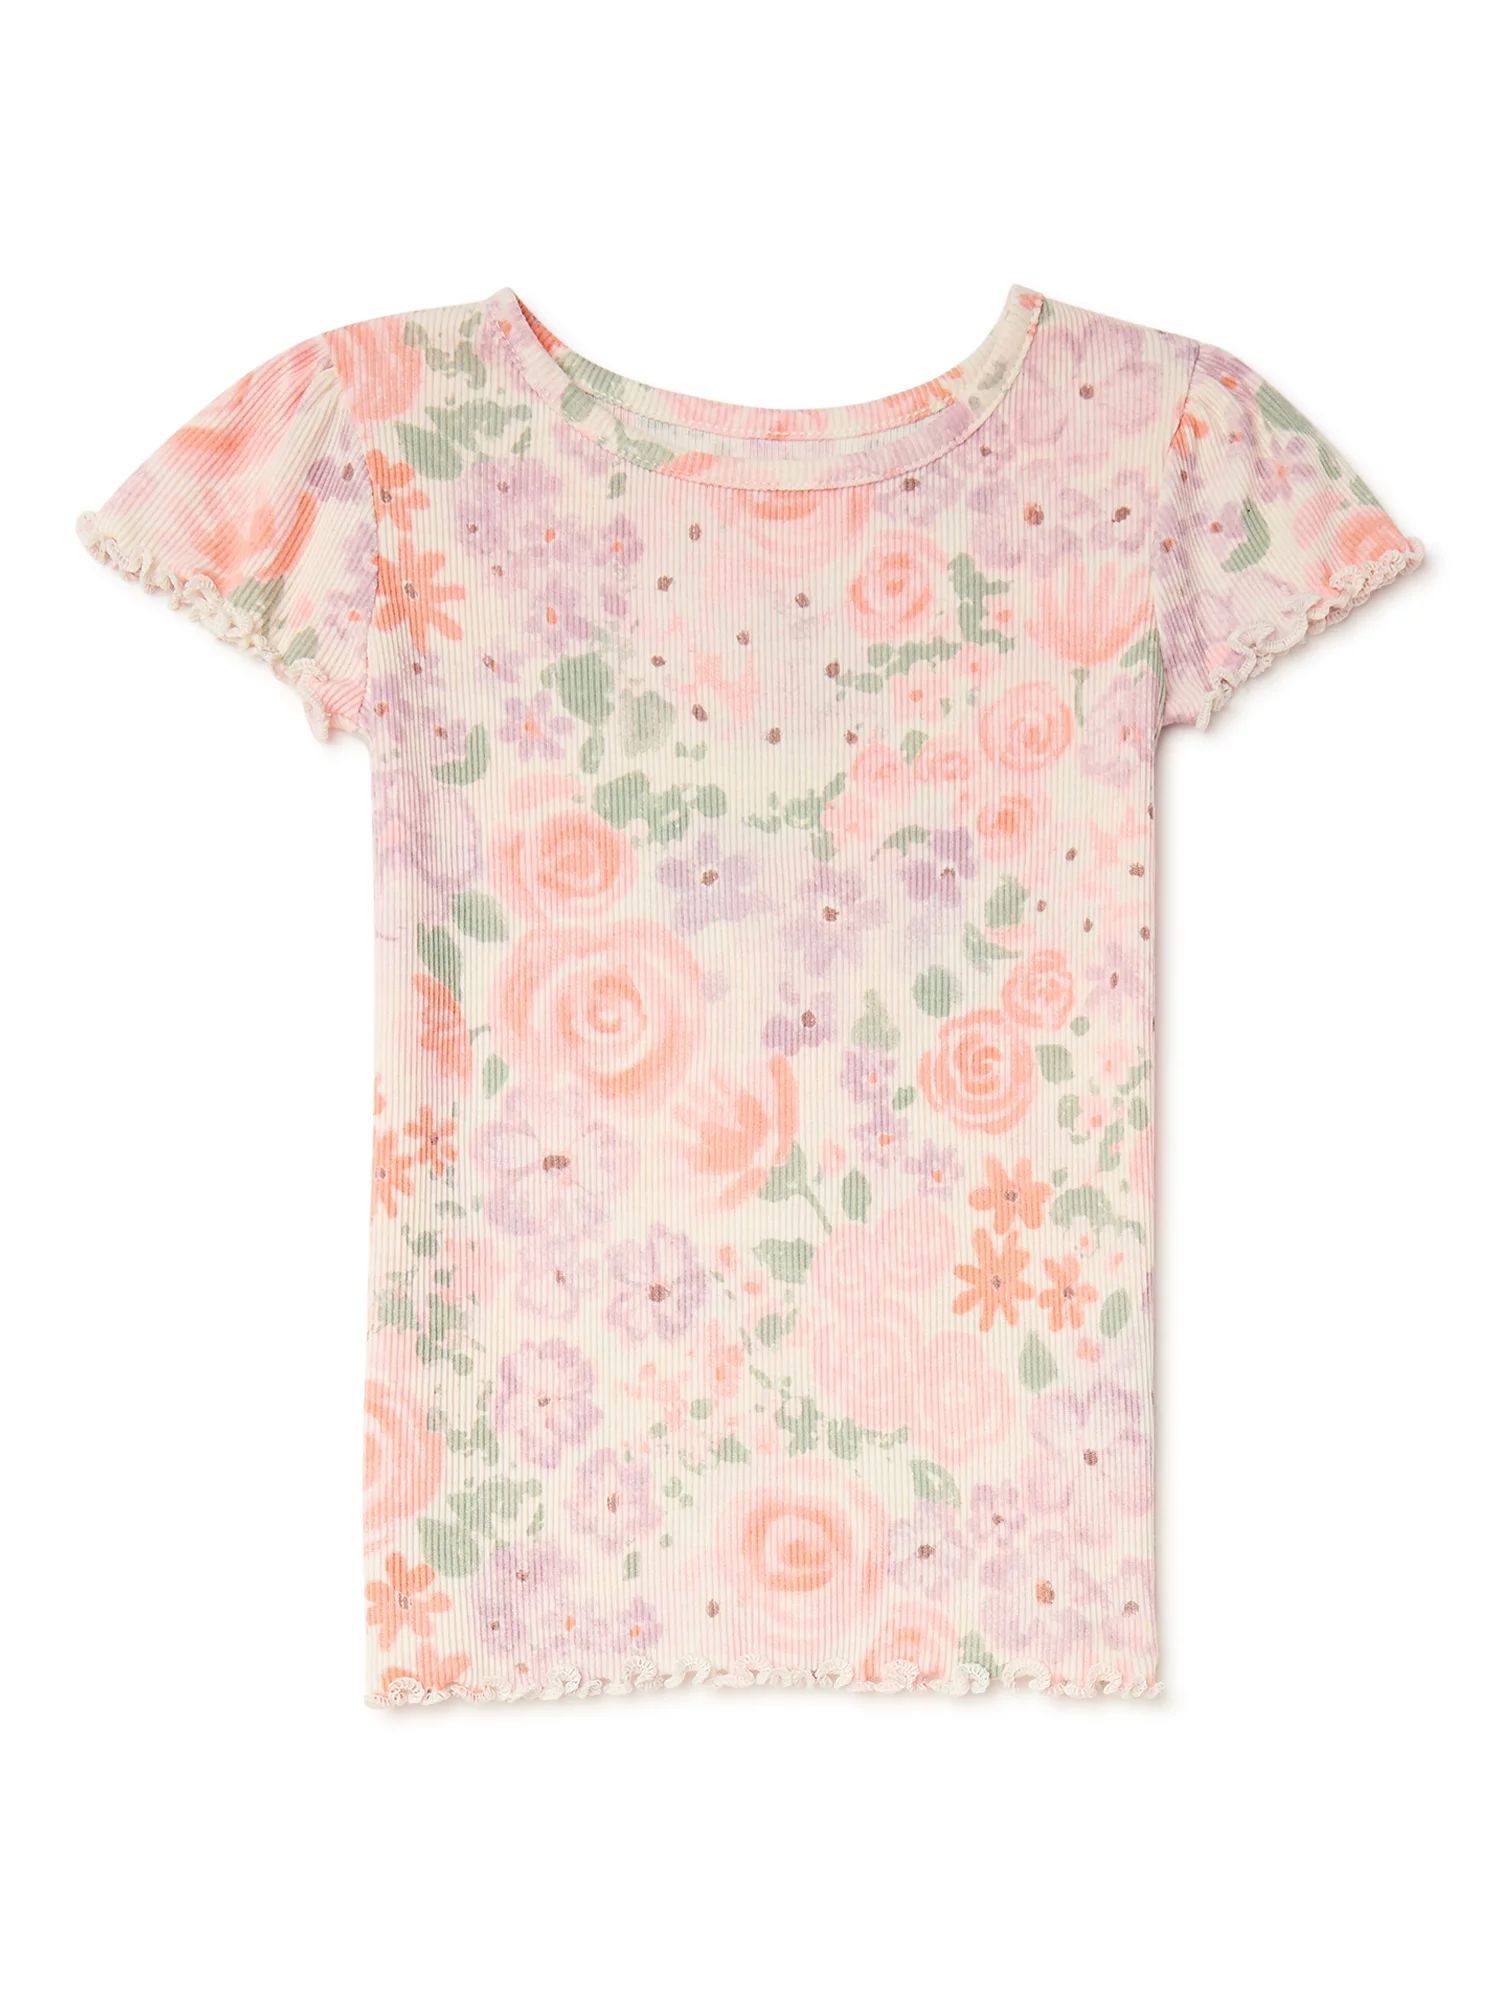 Garanimals Toddler Girl Short Sleeve Printed T-Shirt, Sizes 12M-5T | Walmart (US)